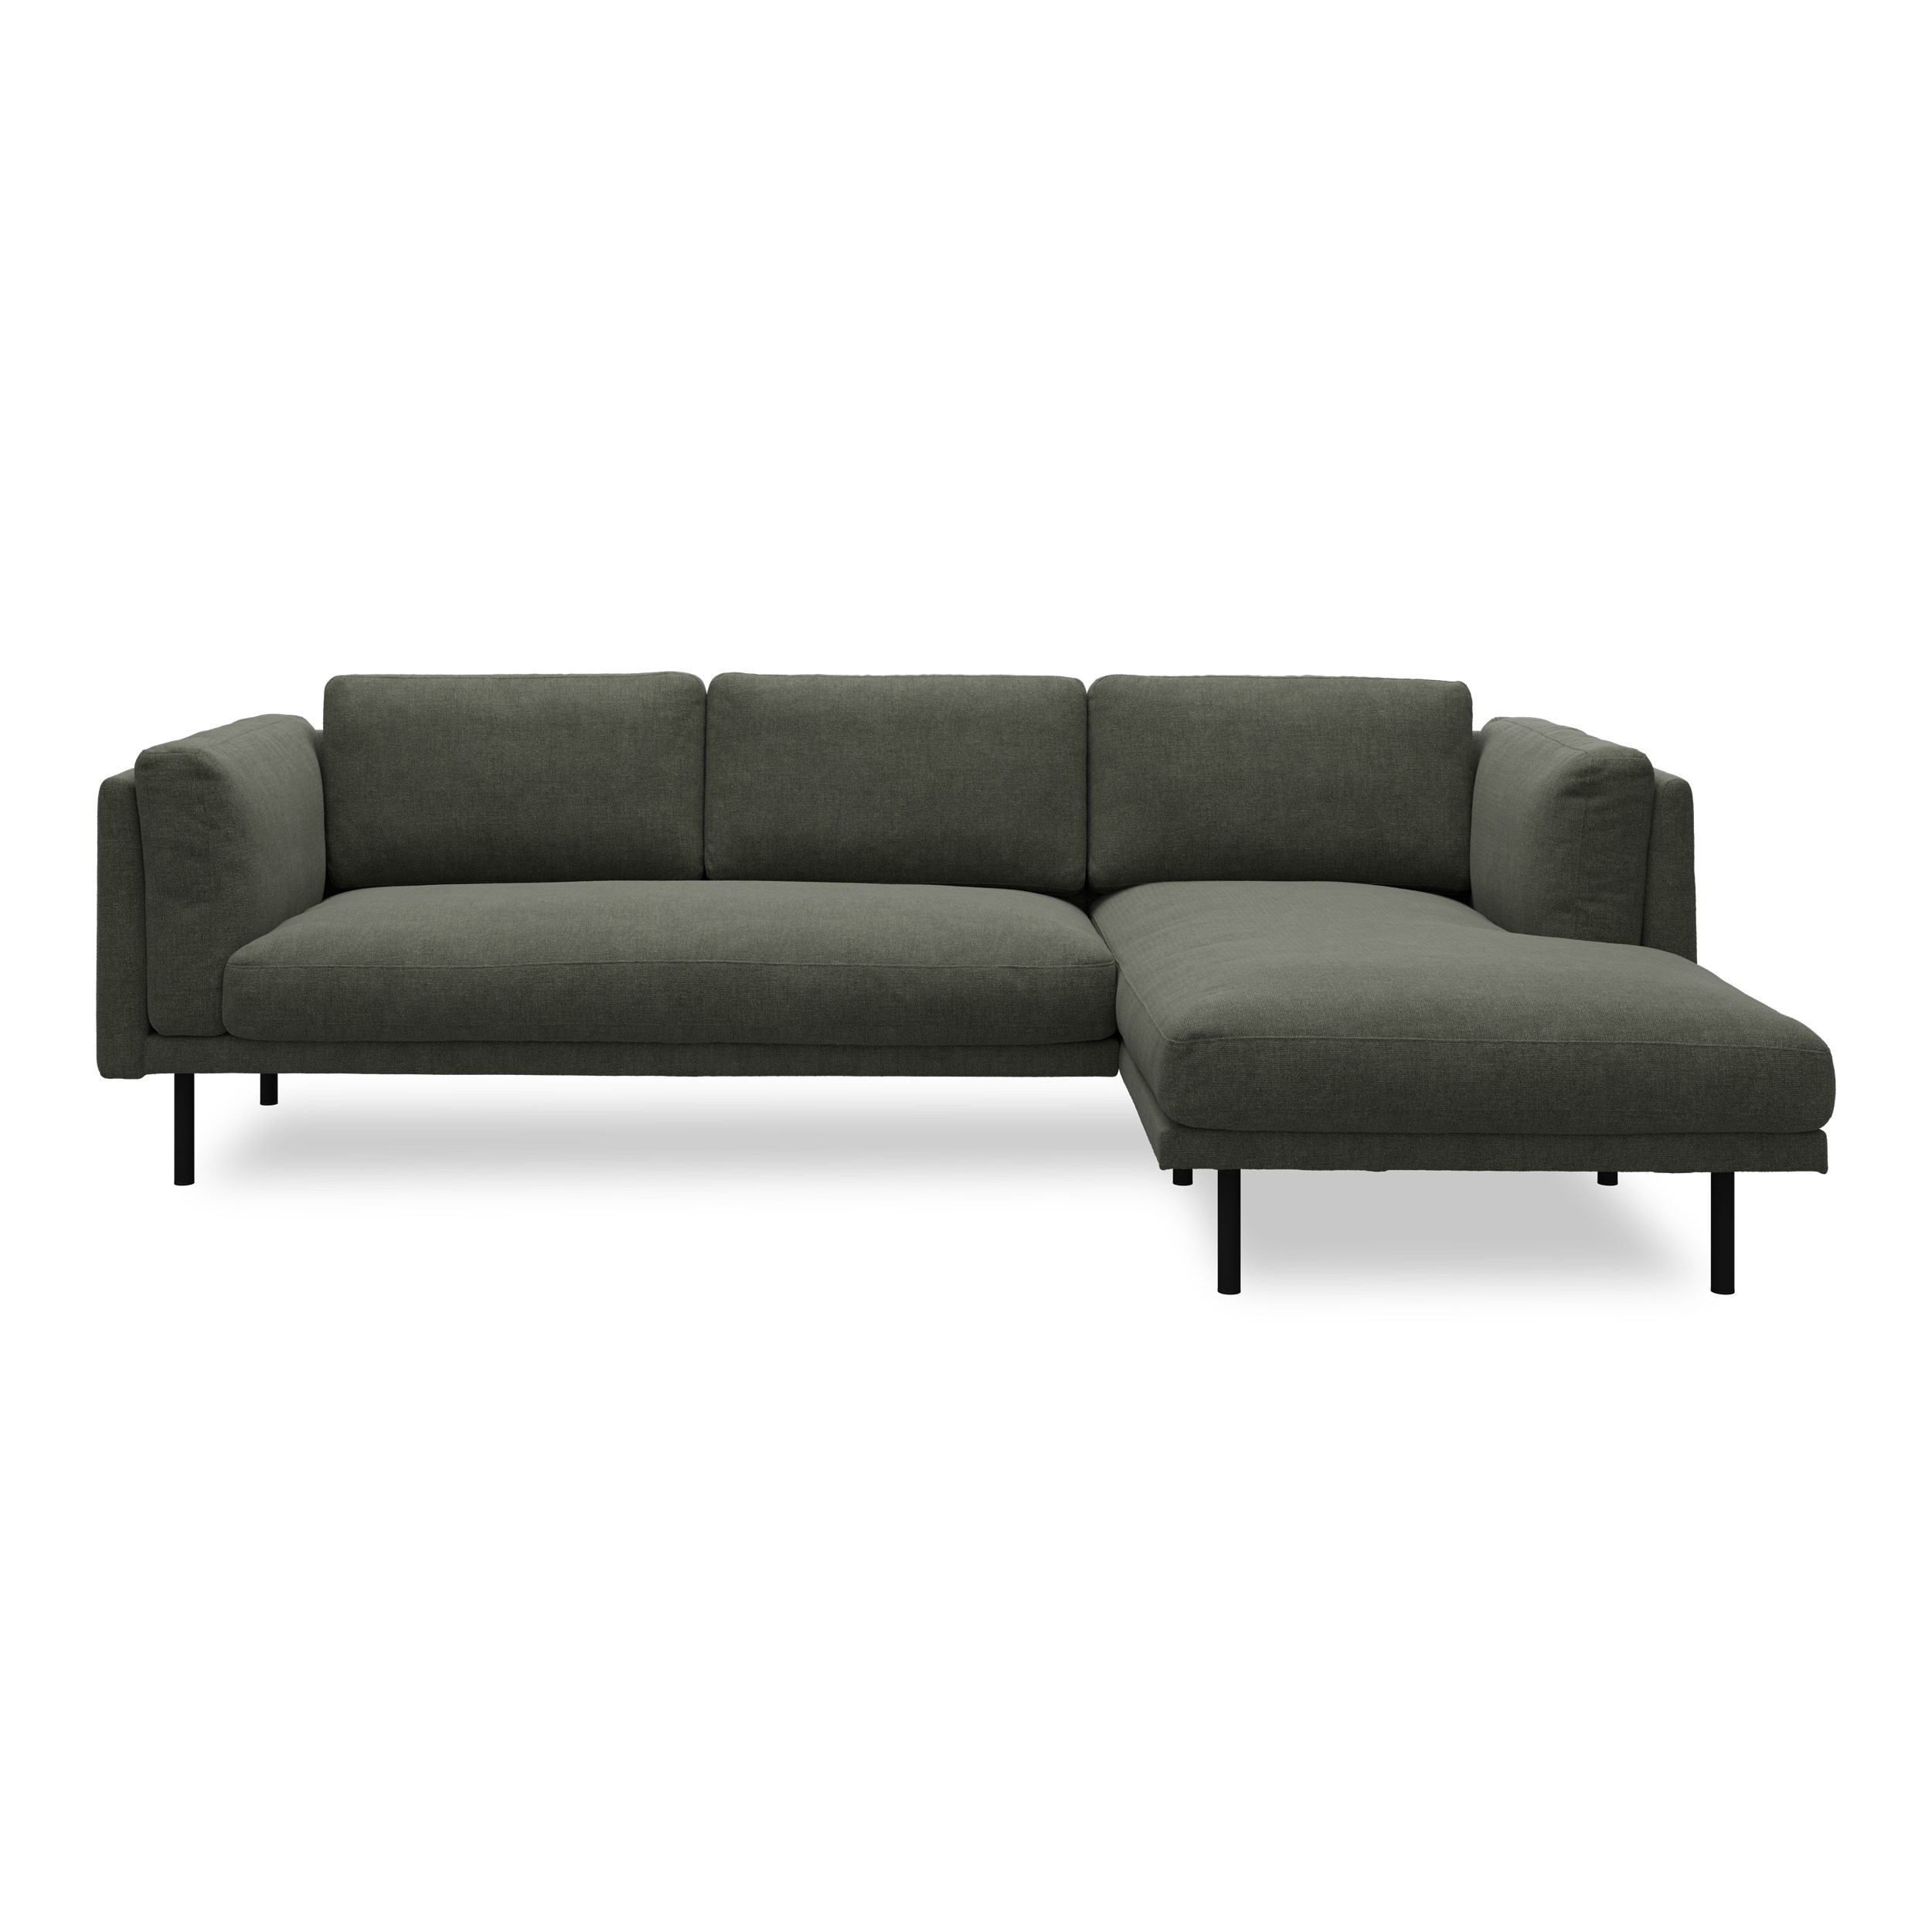 Nebel højrevendt sofa med chaiselong 